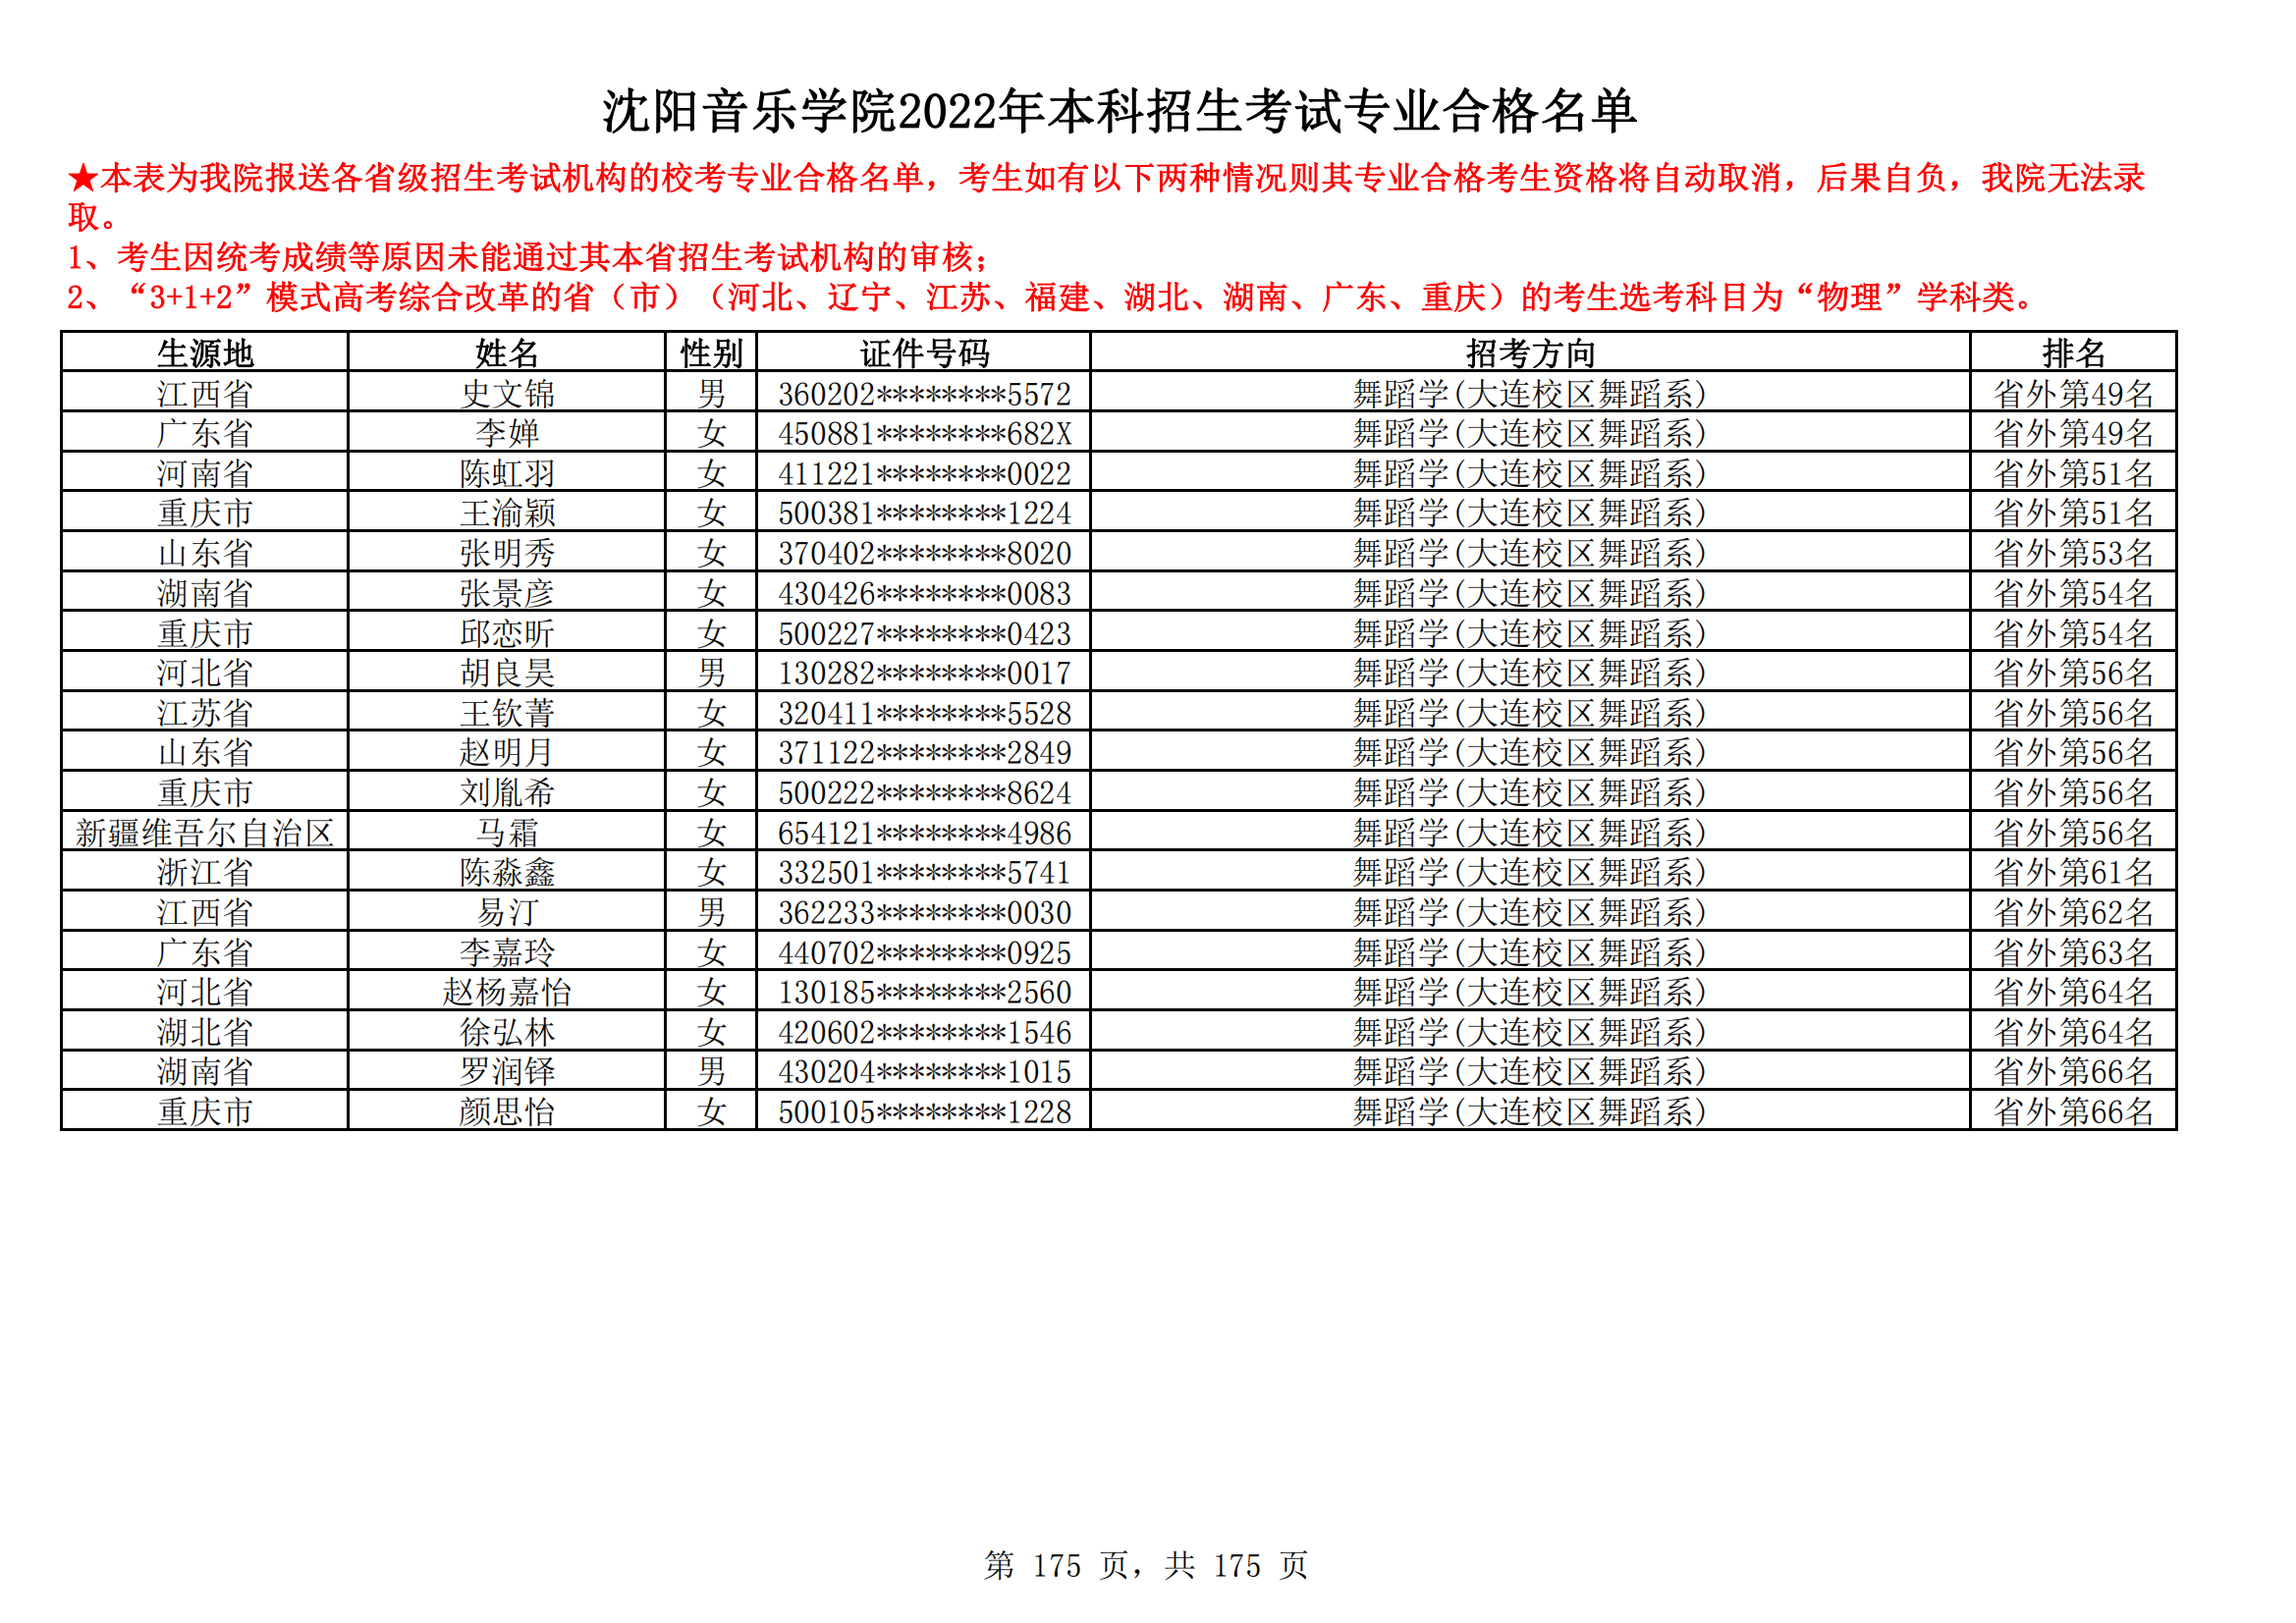 沈阳音乐学院2022年本科招生考试专业合格名单_174.png